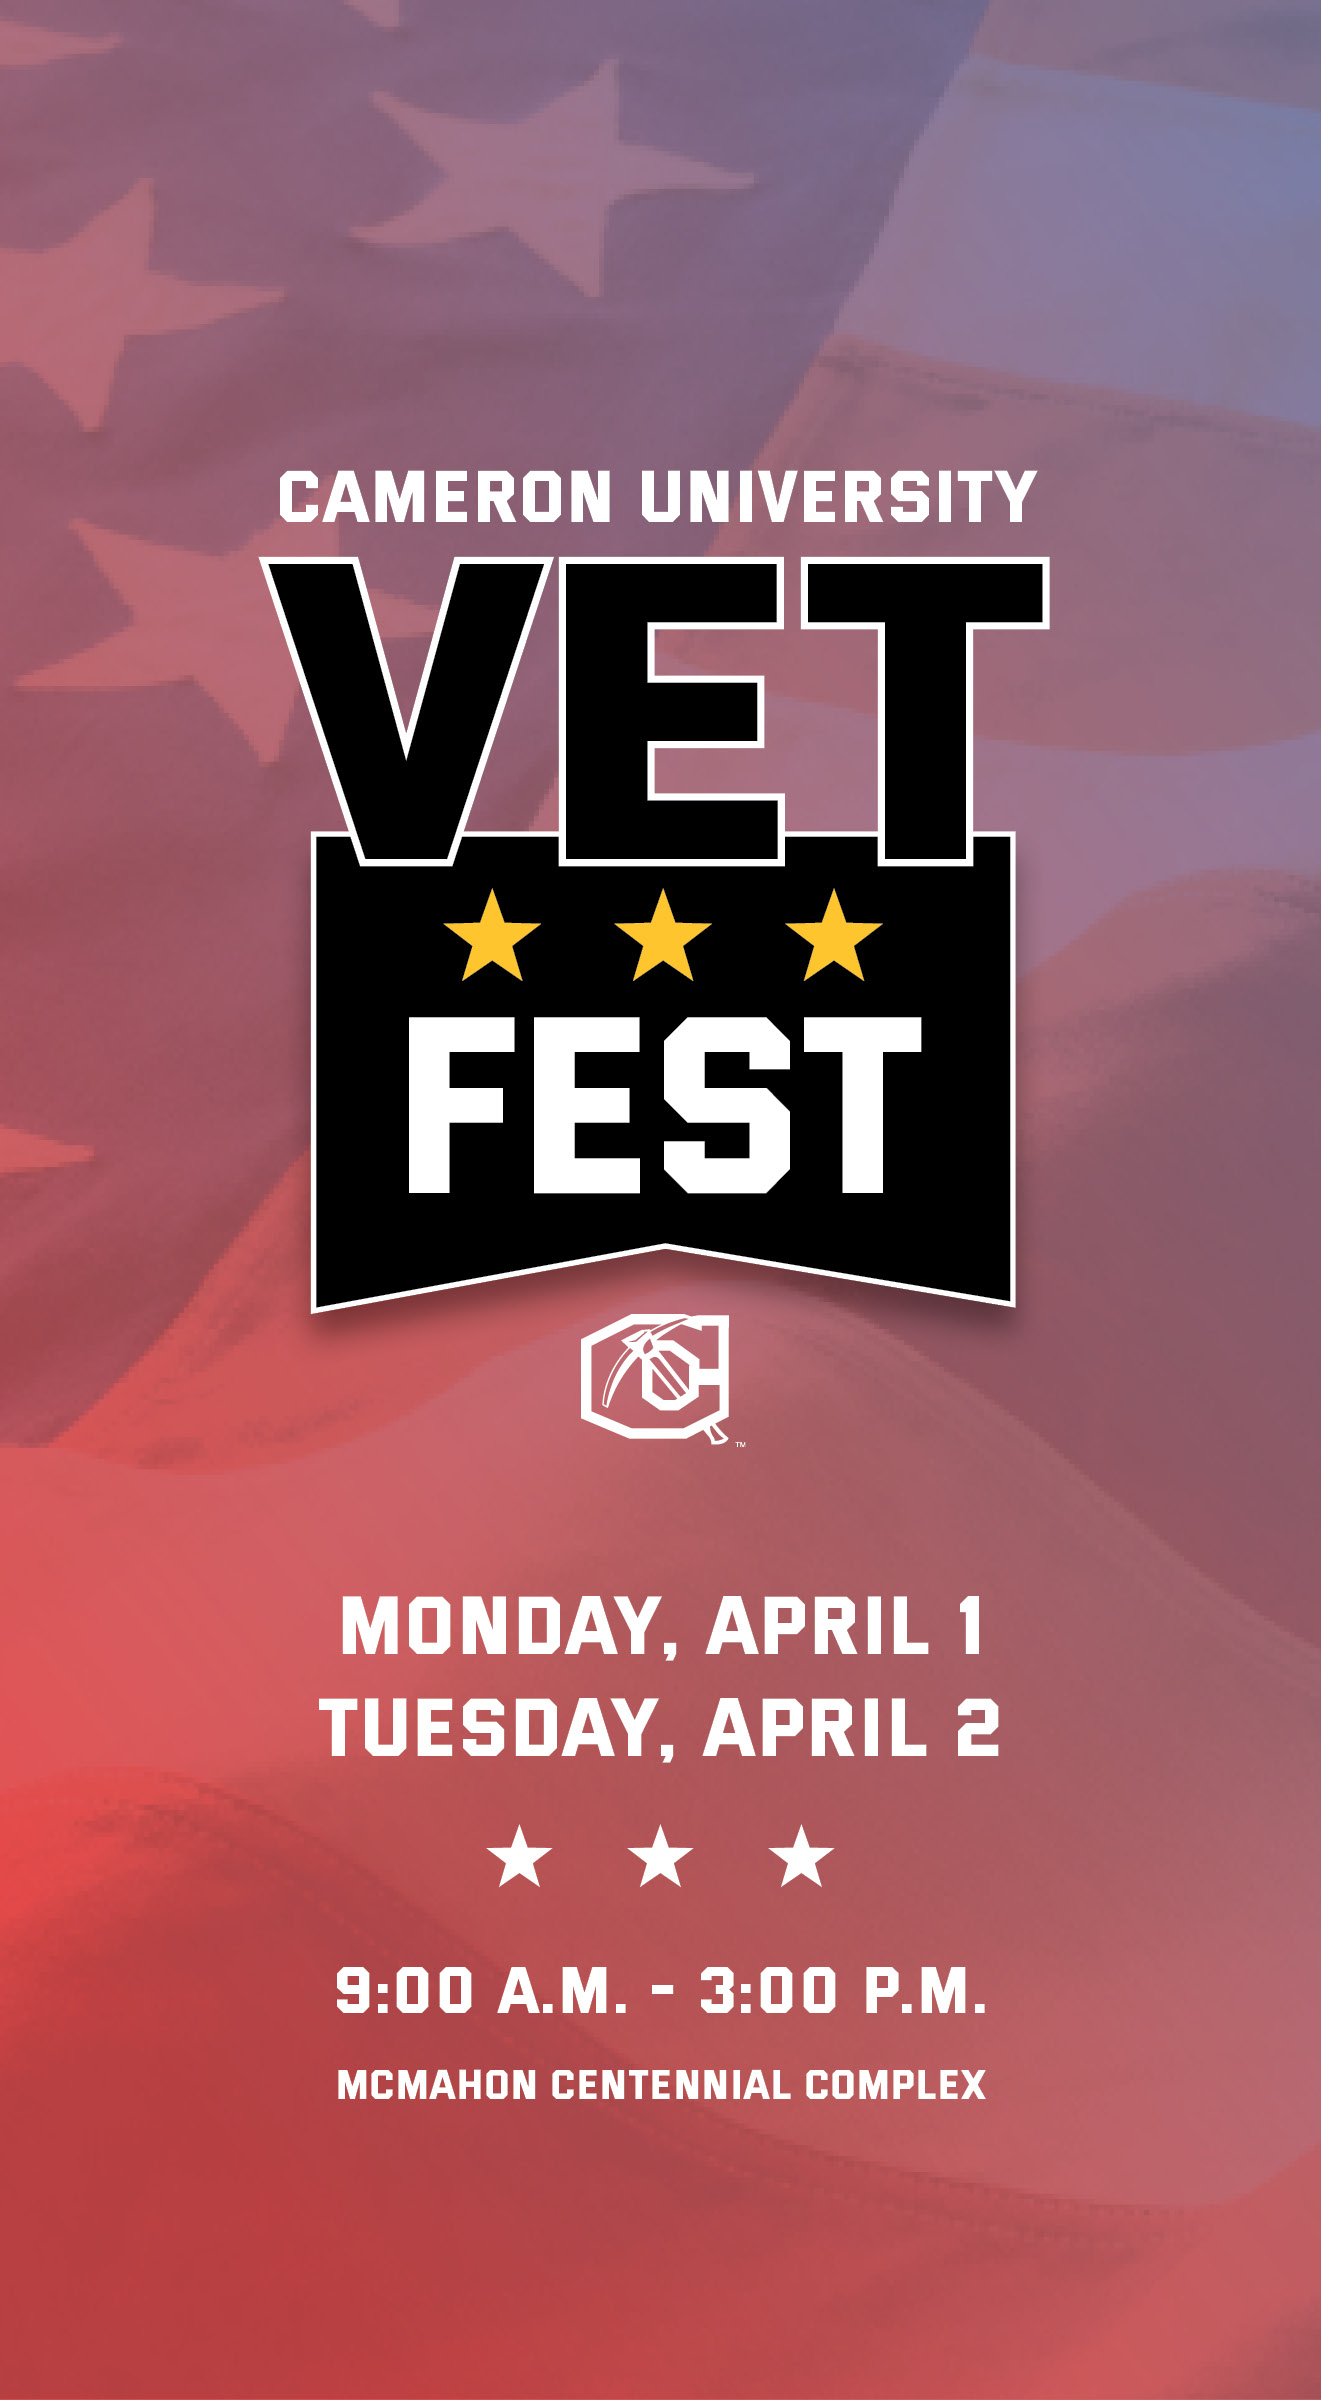 cameron University
Vet Fest
Monday April 1
Tuesday April 2
9 a.m. to 3 p.m. 
McMahon Centennial Complex